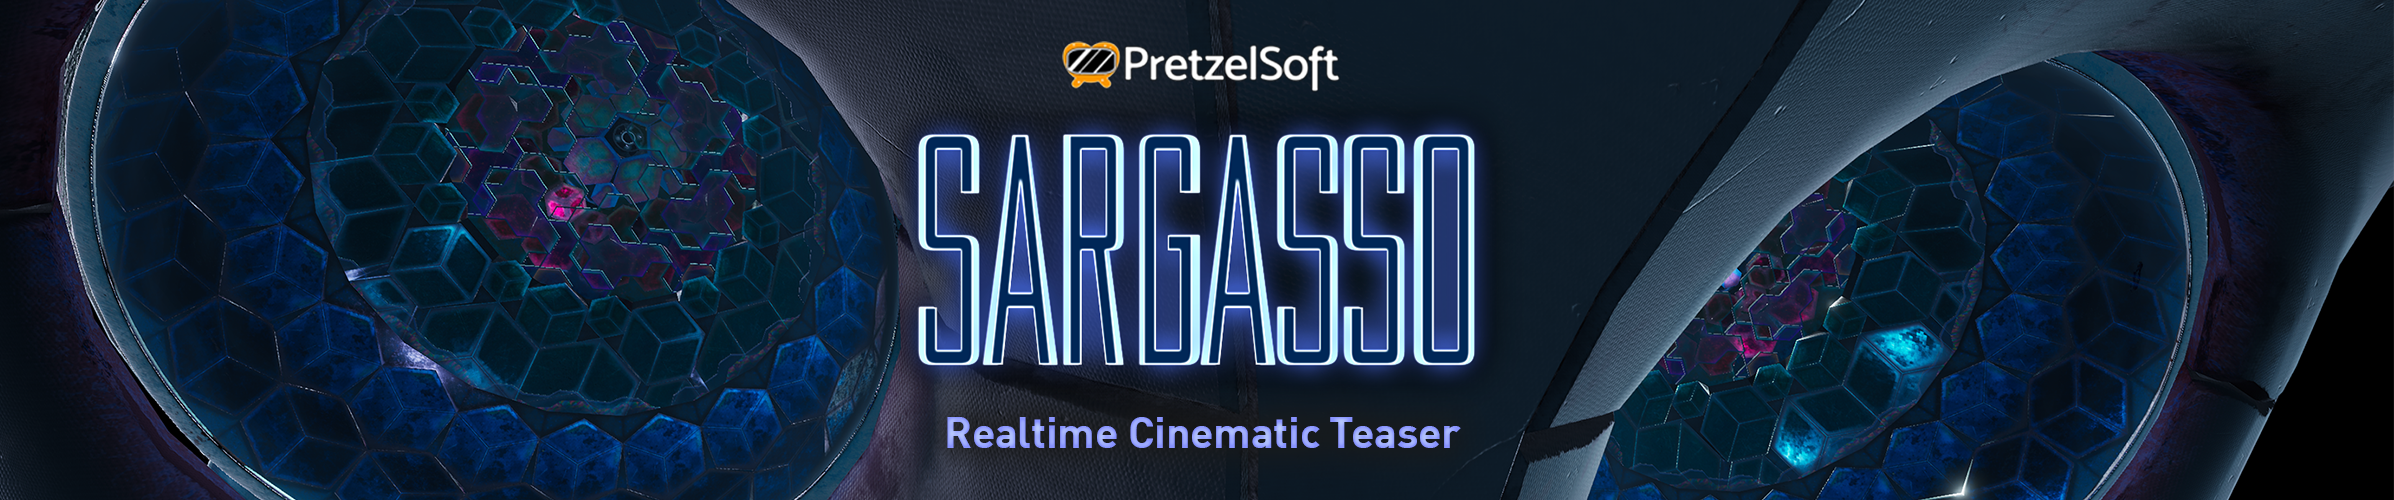 Sargasso - Realtime Cinematic Teaser